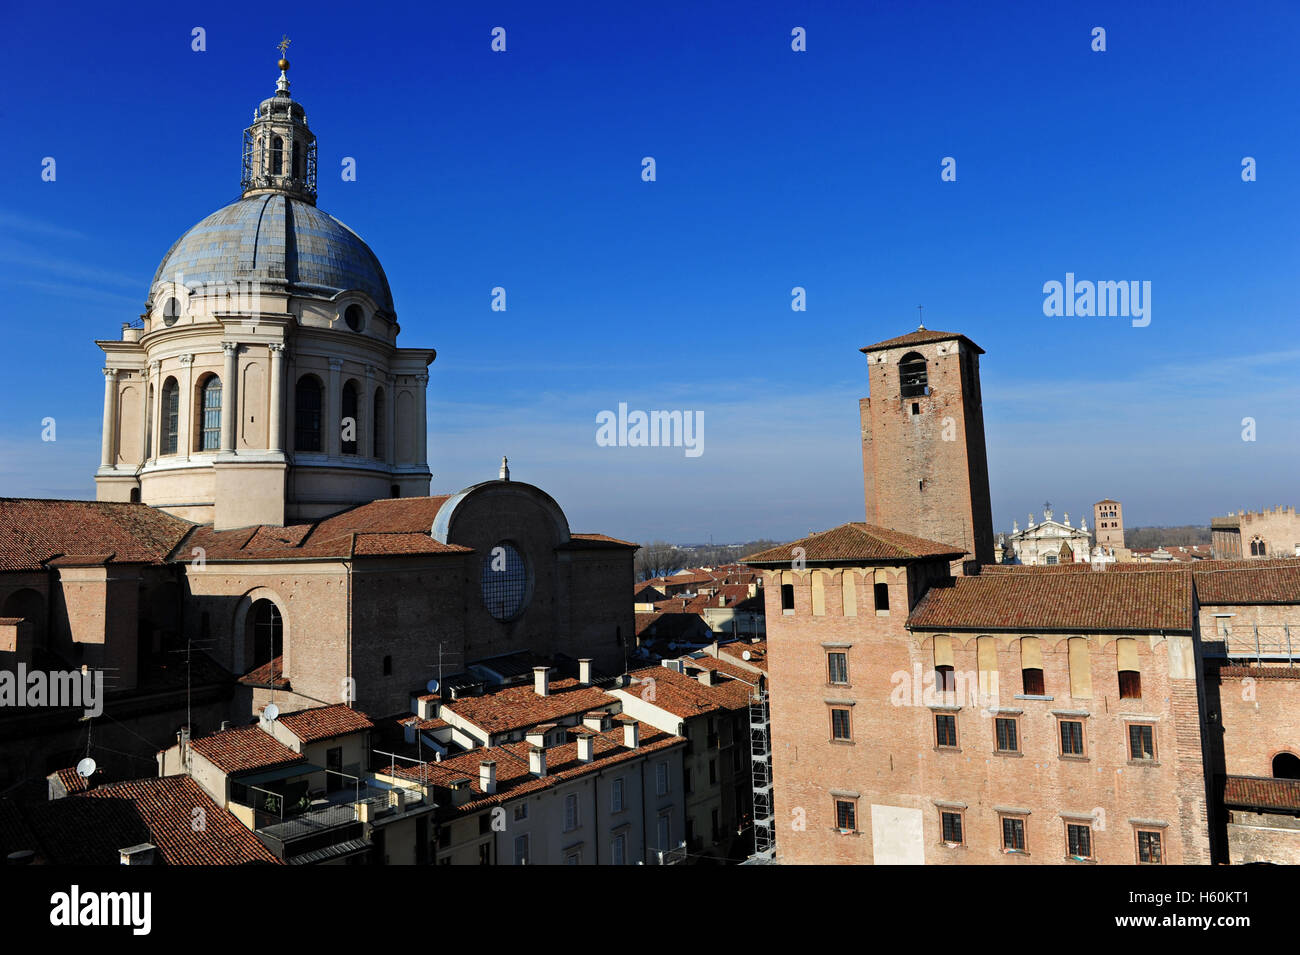 Vista aerea di Piazza delle Erbe con la cupola di Sant'Andrea, Mantova, Italia Foto Stock